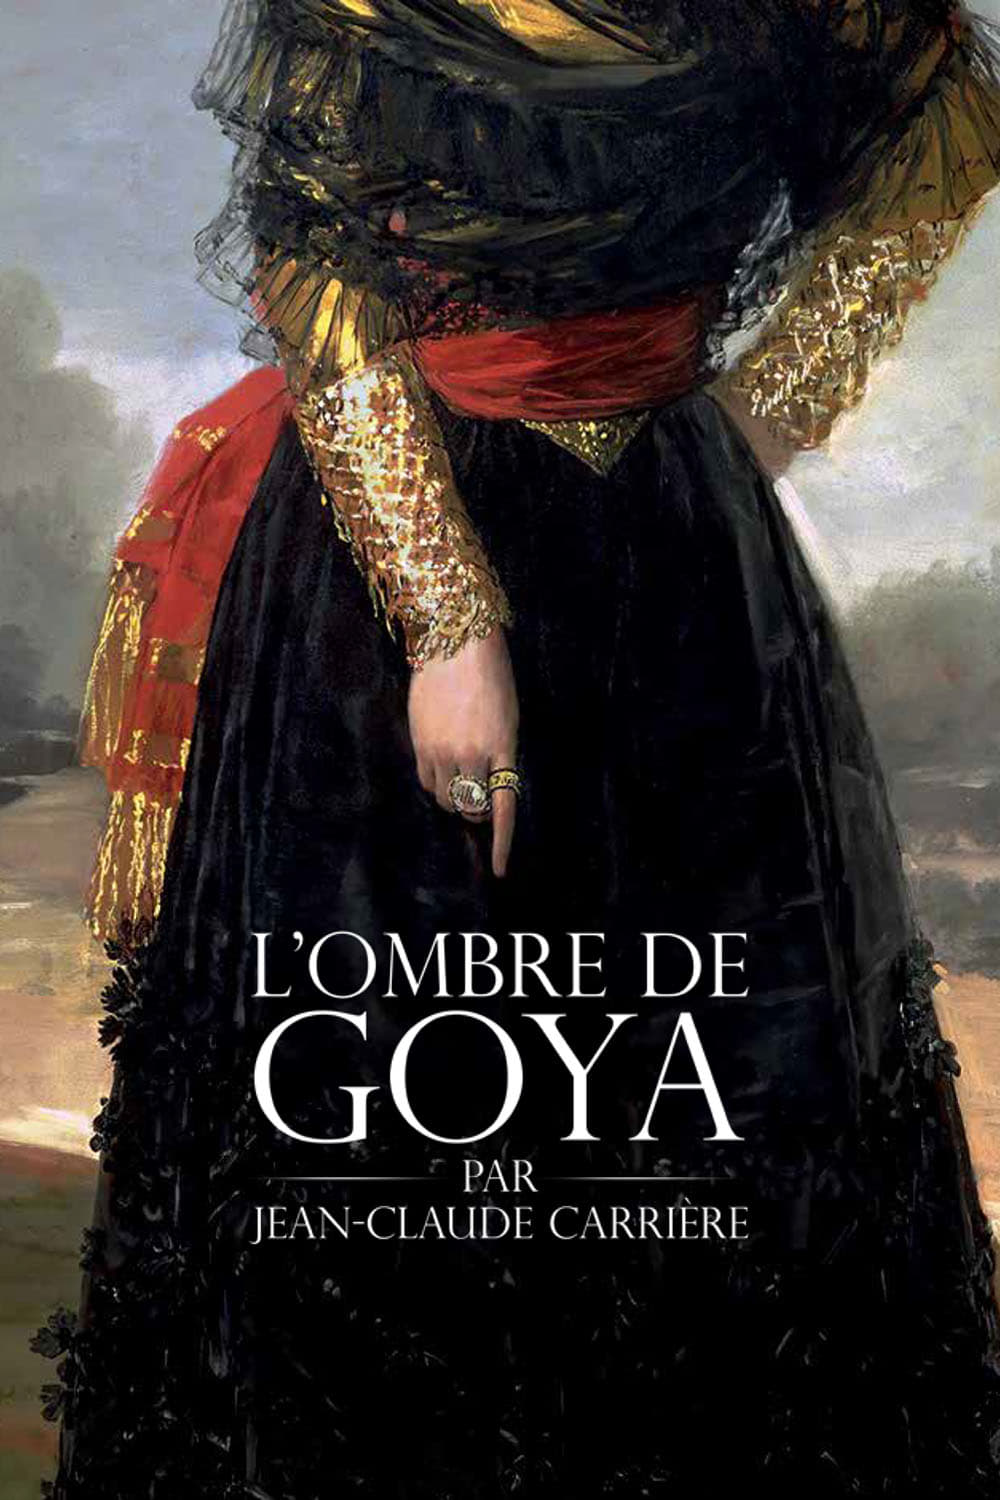 L’Ombre de Goya par Jean-Claude Carrière sur annuaire telechargement